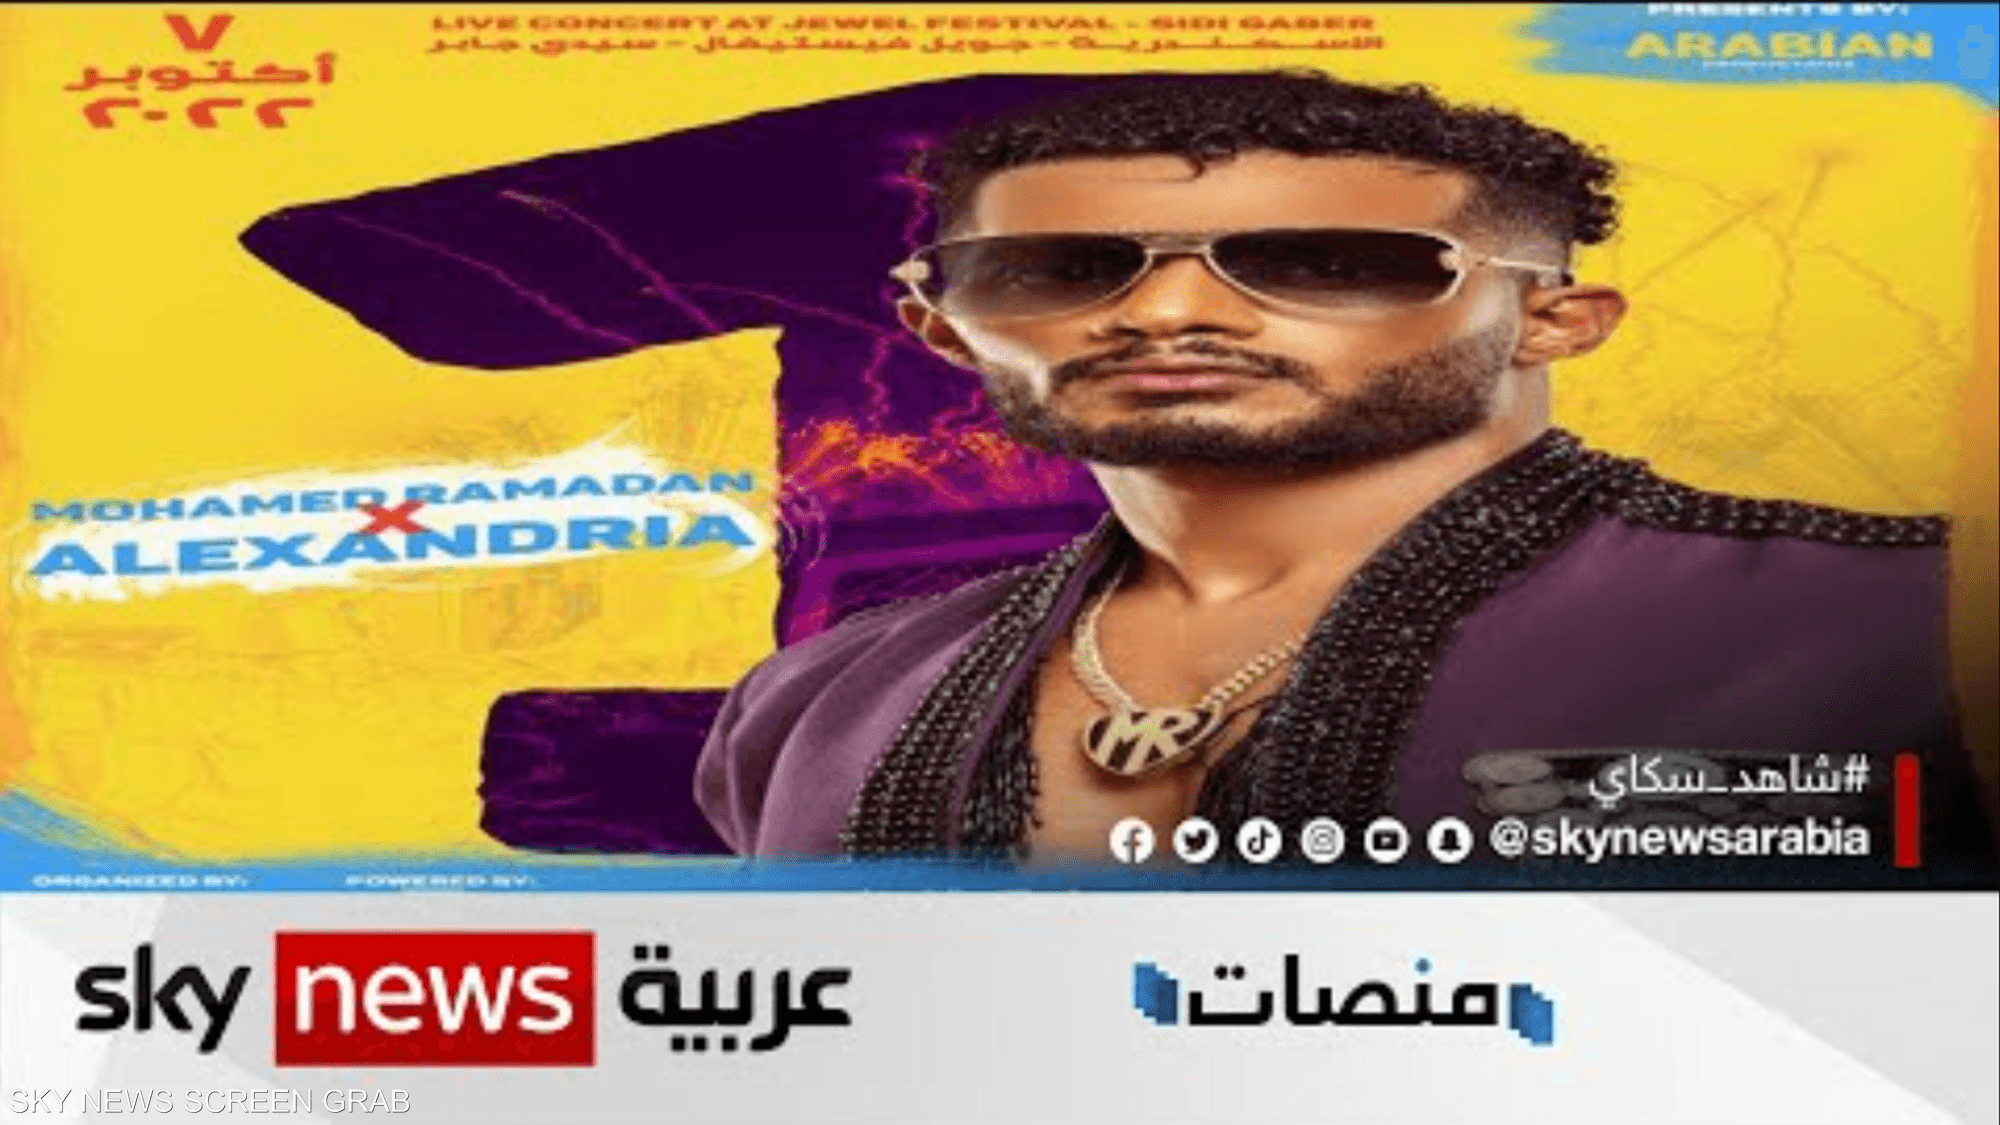 الممثل المصري محمد رمضان يرد على رواية طرده